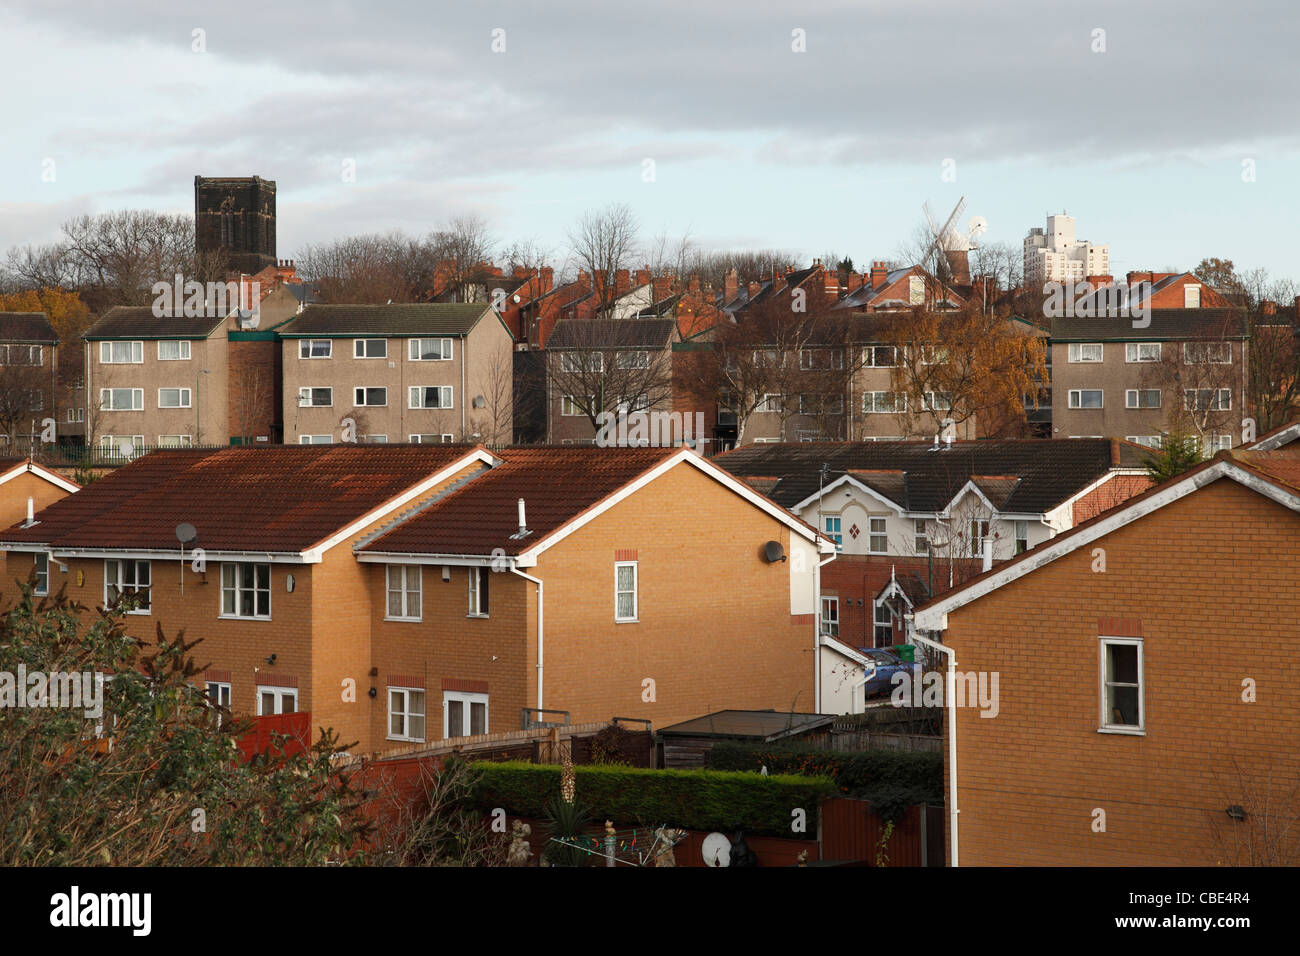 Des logements sociaux et privés à Sneinton, Nottingham, Angleterre, Royaume-Uni Banque D'Images